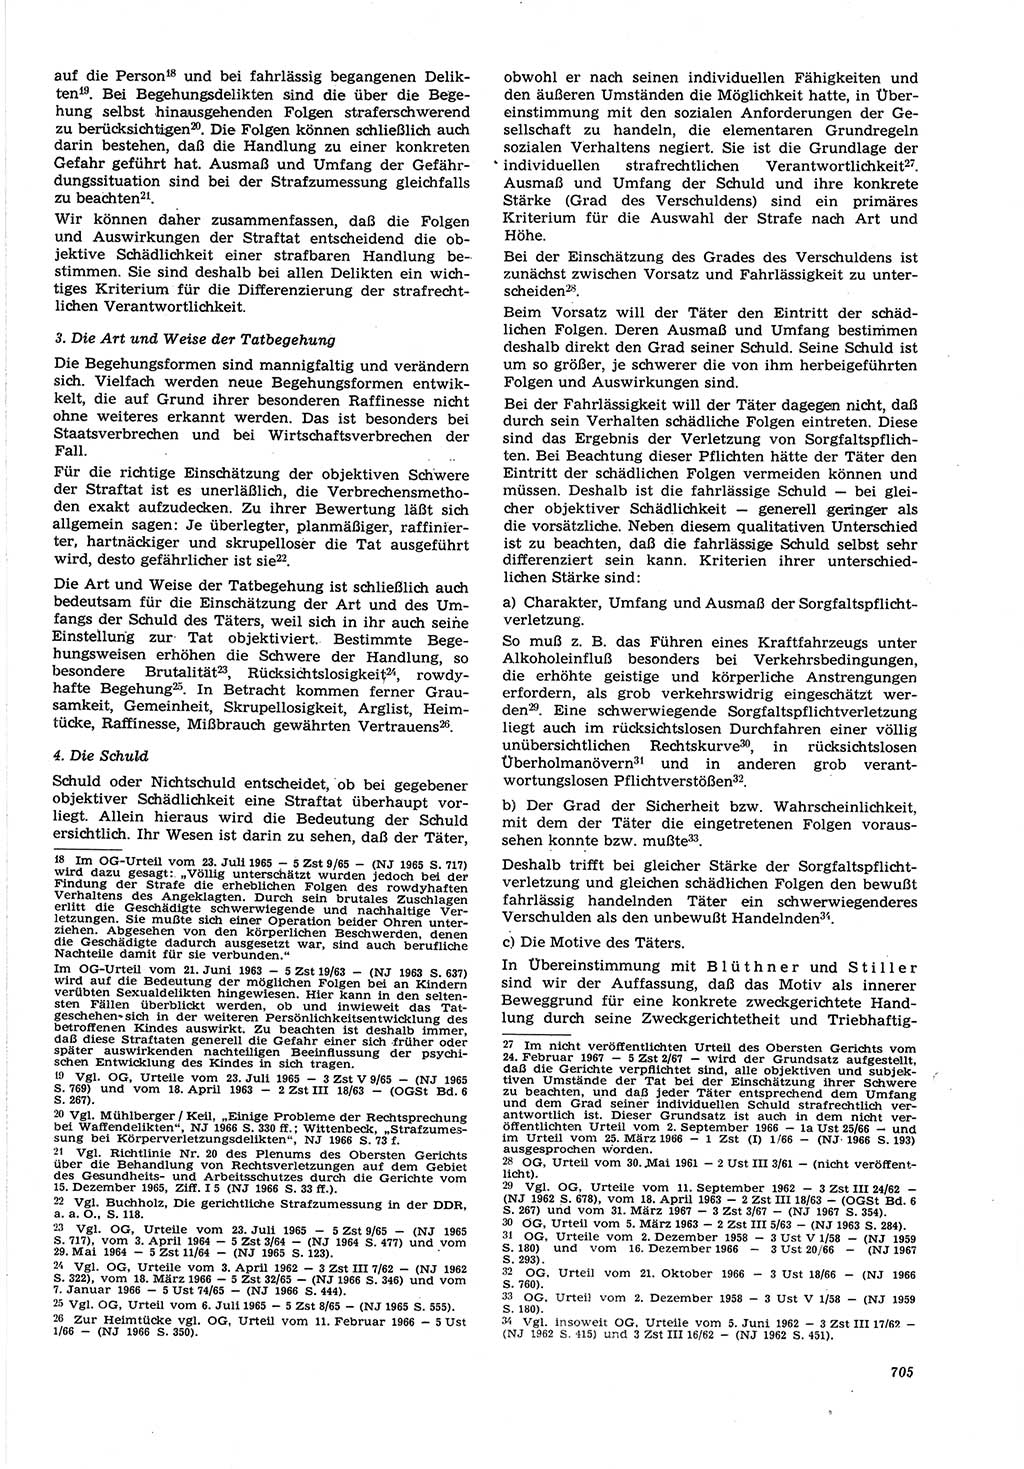 Neue Justiz (NJ), Zeitschrift für Recht und Rechtswissenschaft [Deutsche Demokratische Republik (DDR)], 21. Jahrgang 1967, Seite 705 (NJ DDR 1967, S. 705)